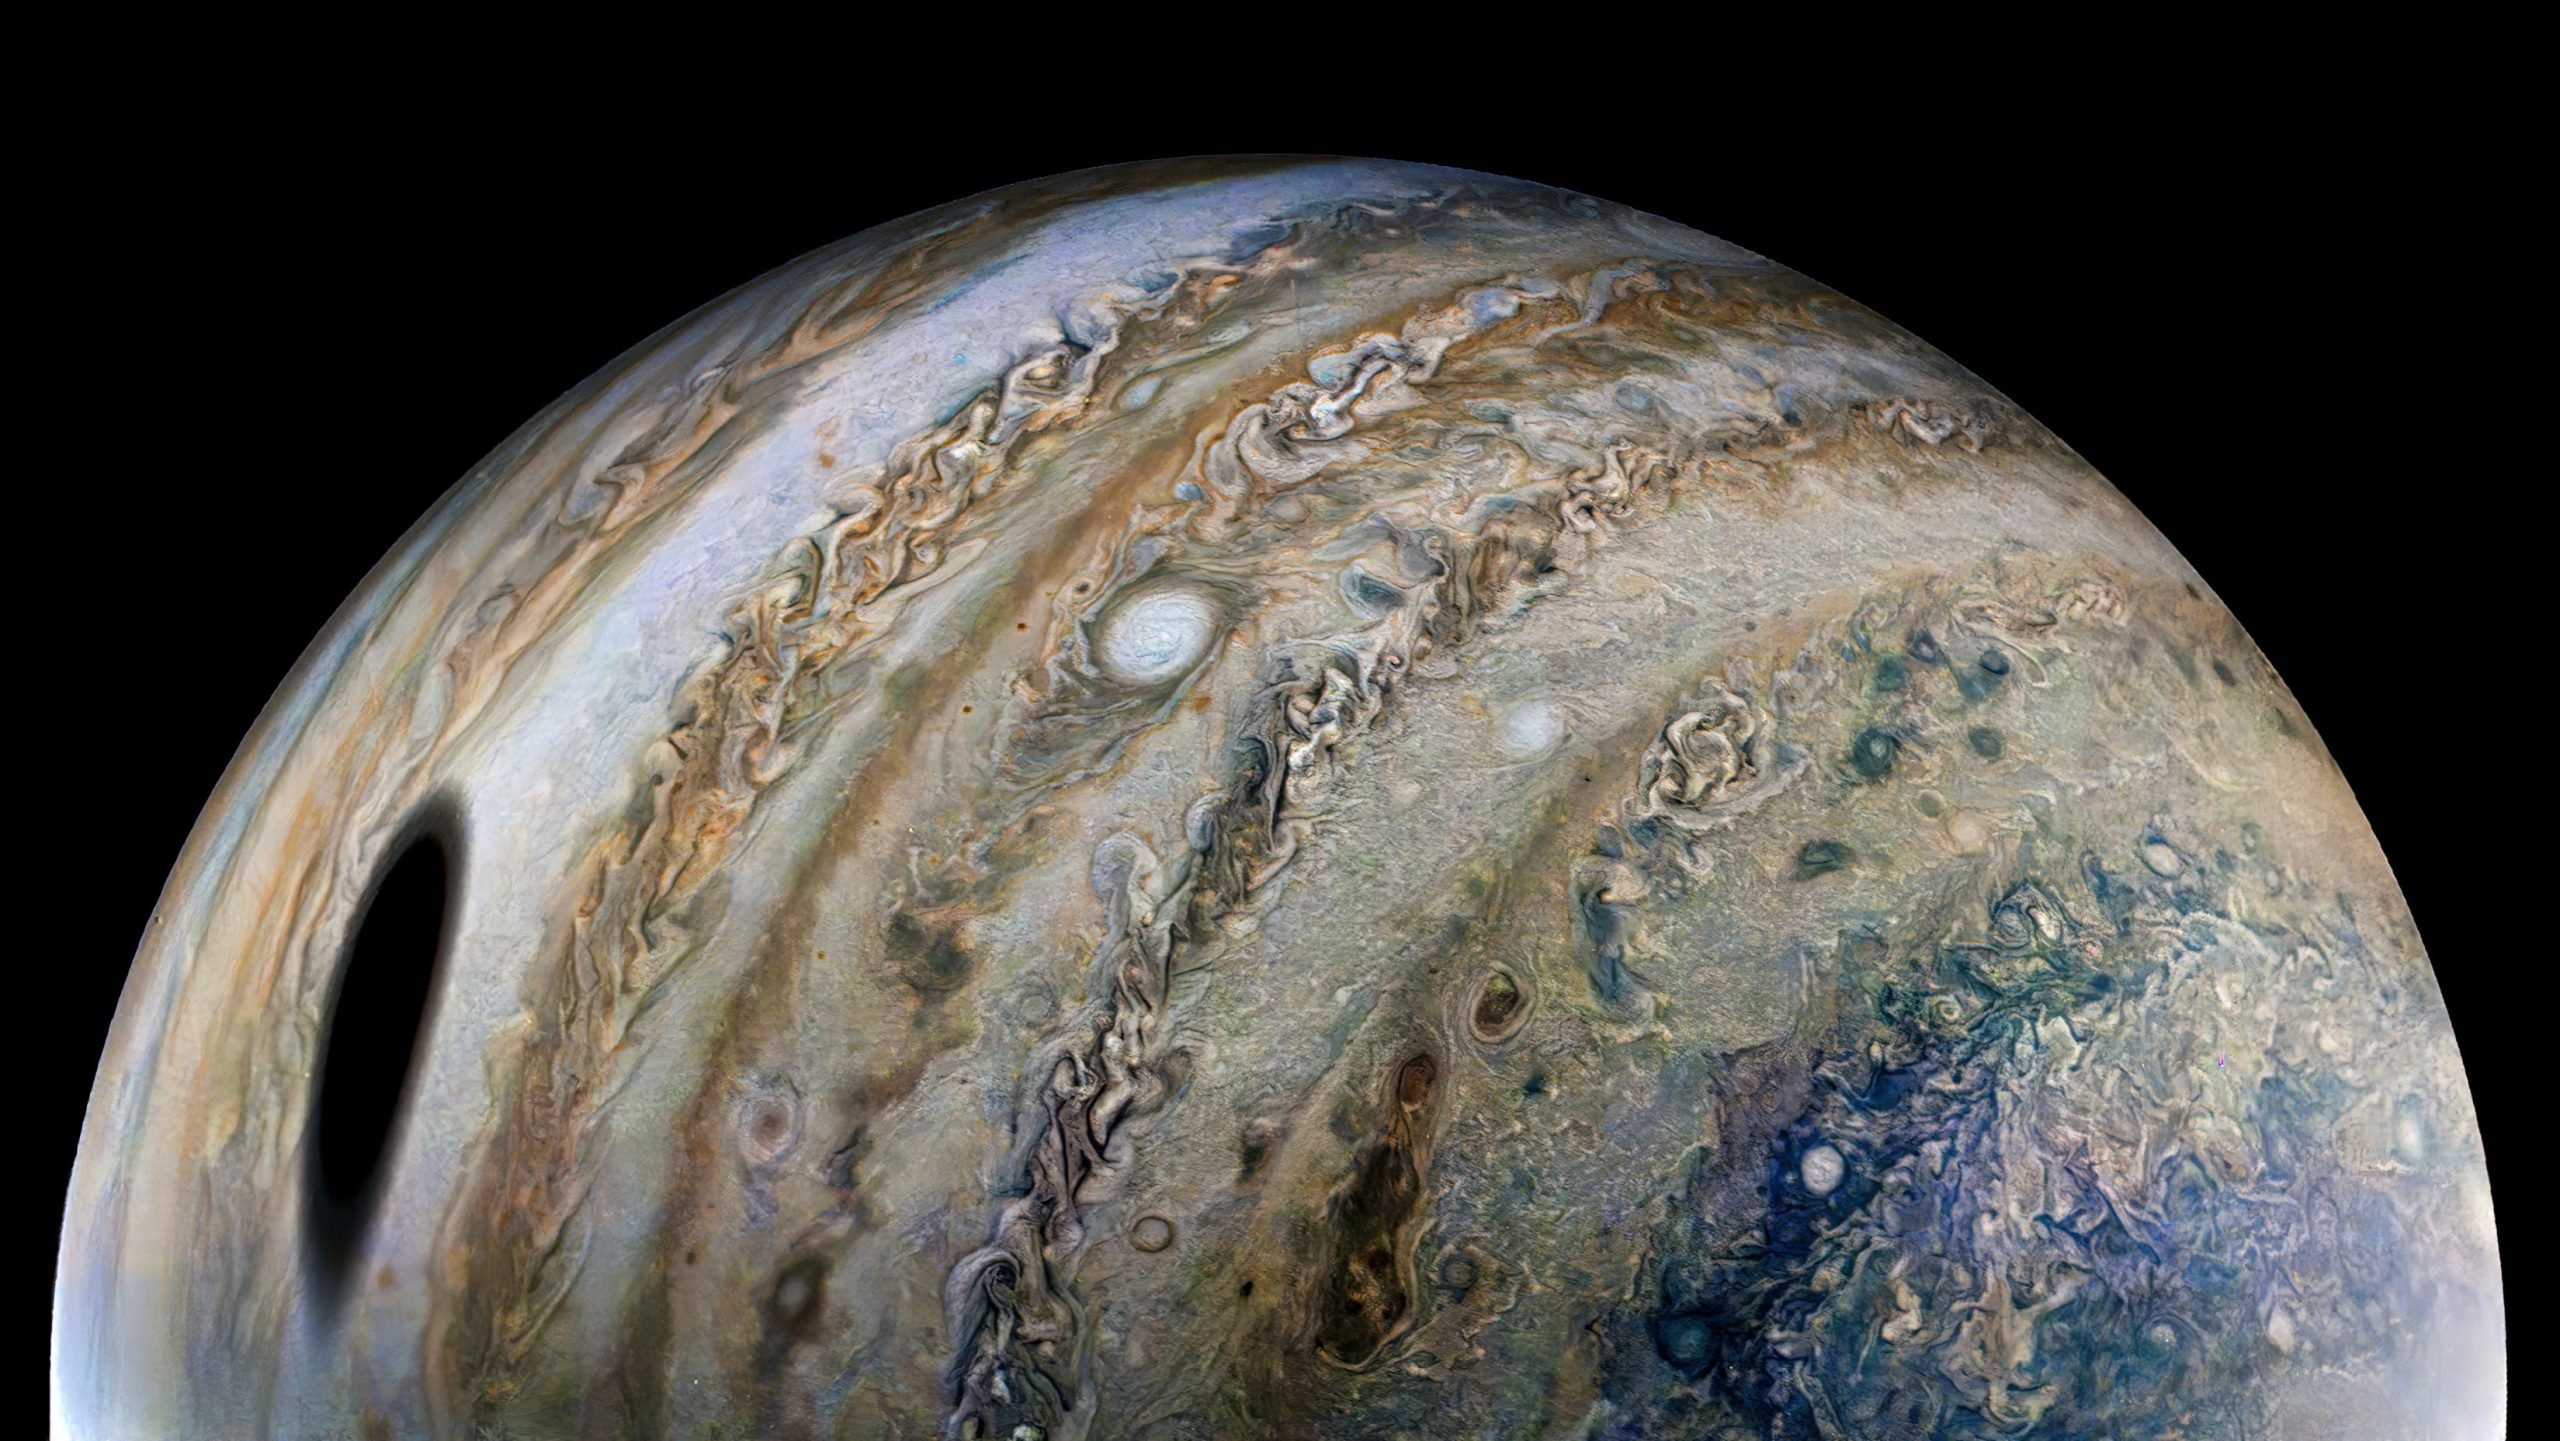 Ganímedes proyecta una sombra masiva sobre Júpiter en una nueva imagen espectacular de la nave espacial Juno de la NASA